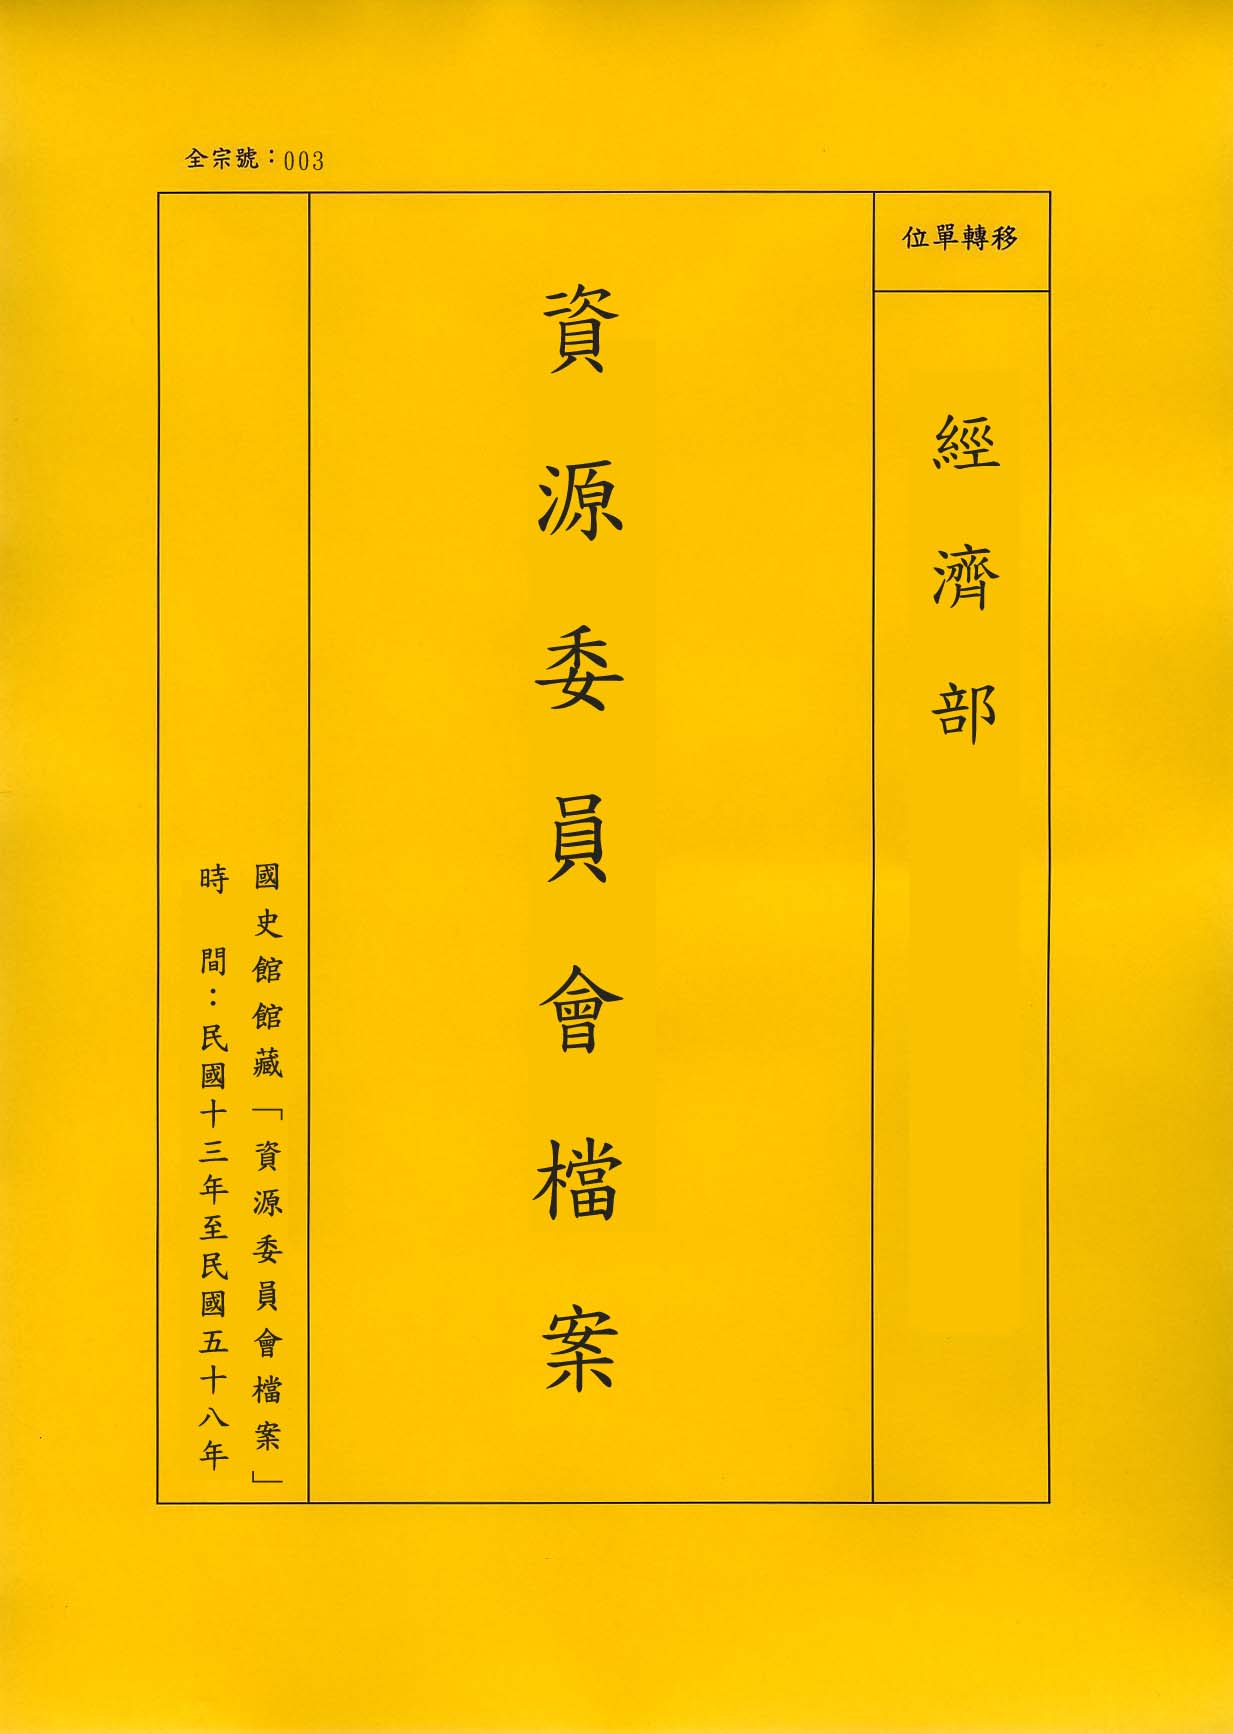 卷名:毛紡織工廠調查表─上海(一)(003-010306-0218)